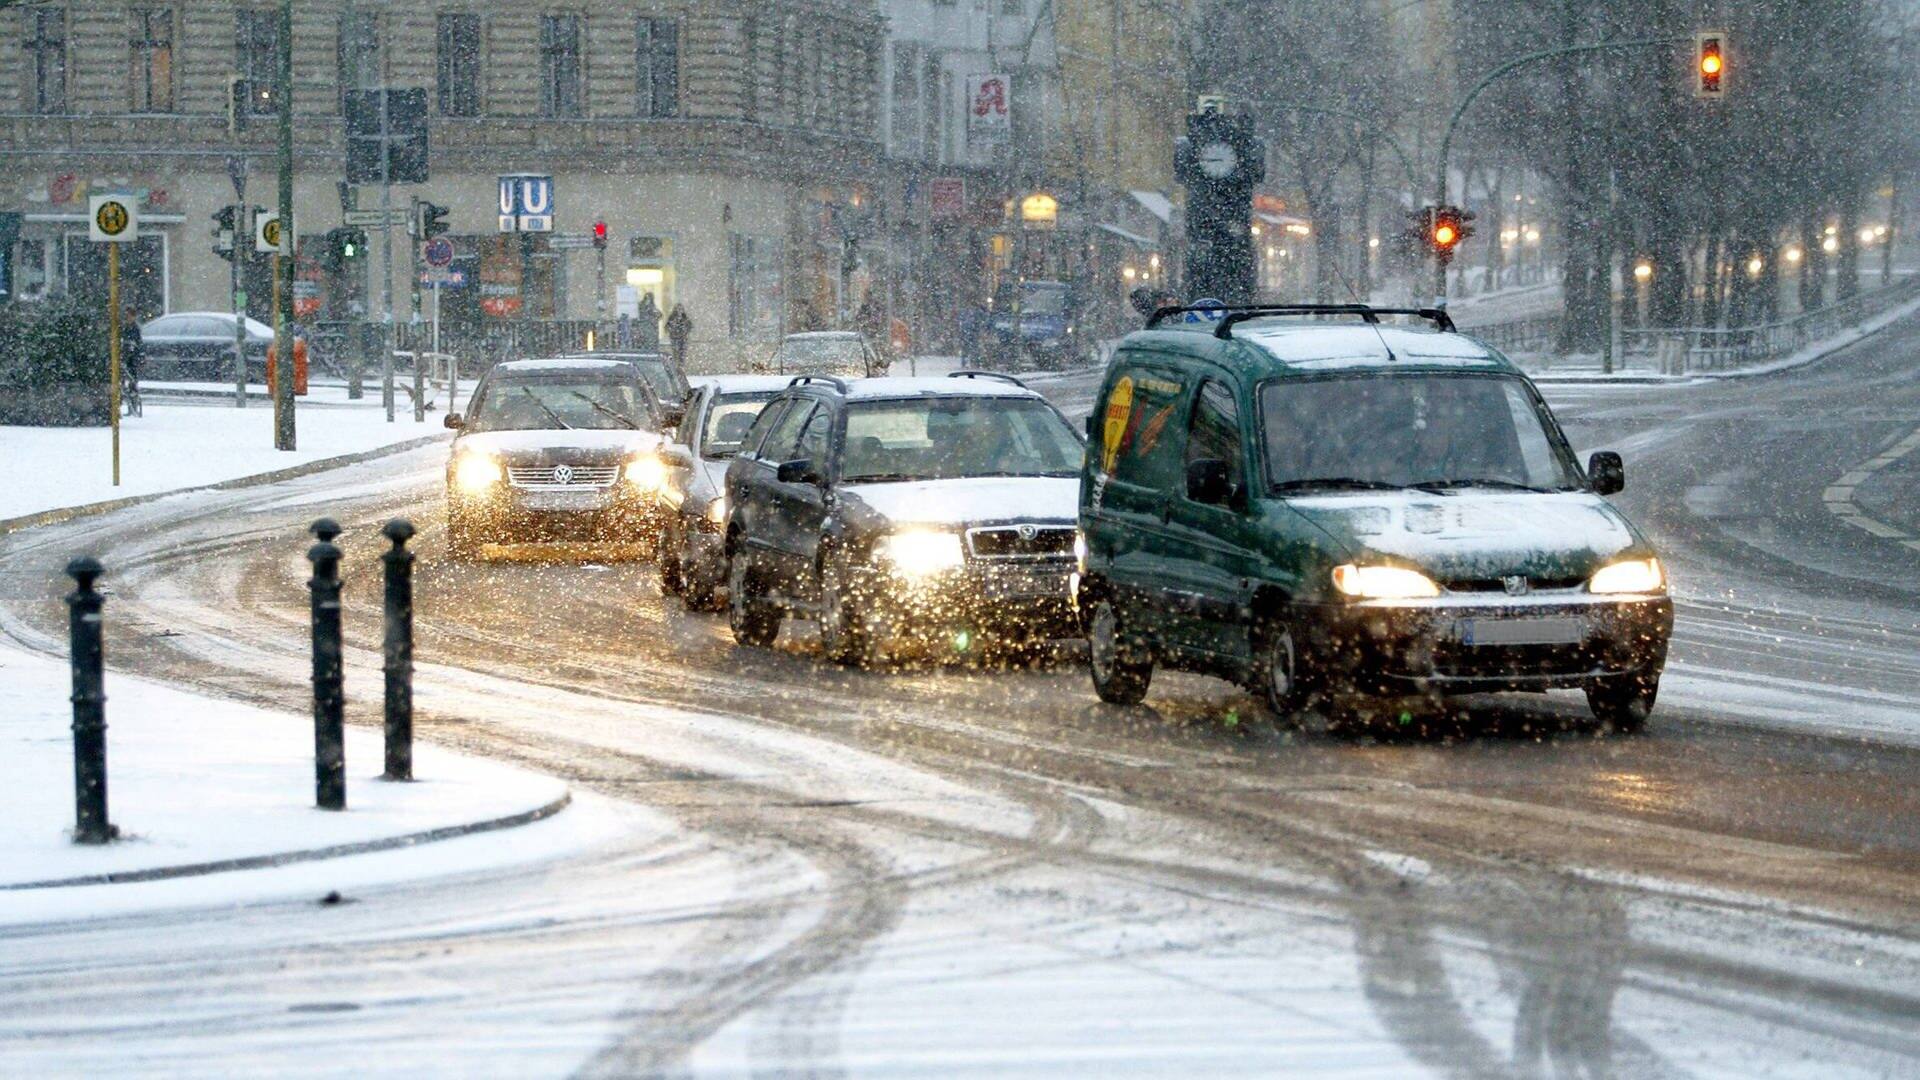 Mehrere Autos fahren bei Schnee im Stadtverkehr. (Foto: IMAGO, Contrast/Streubel)